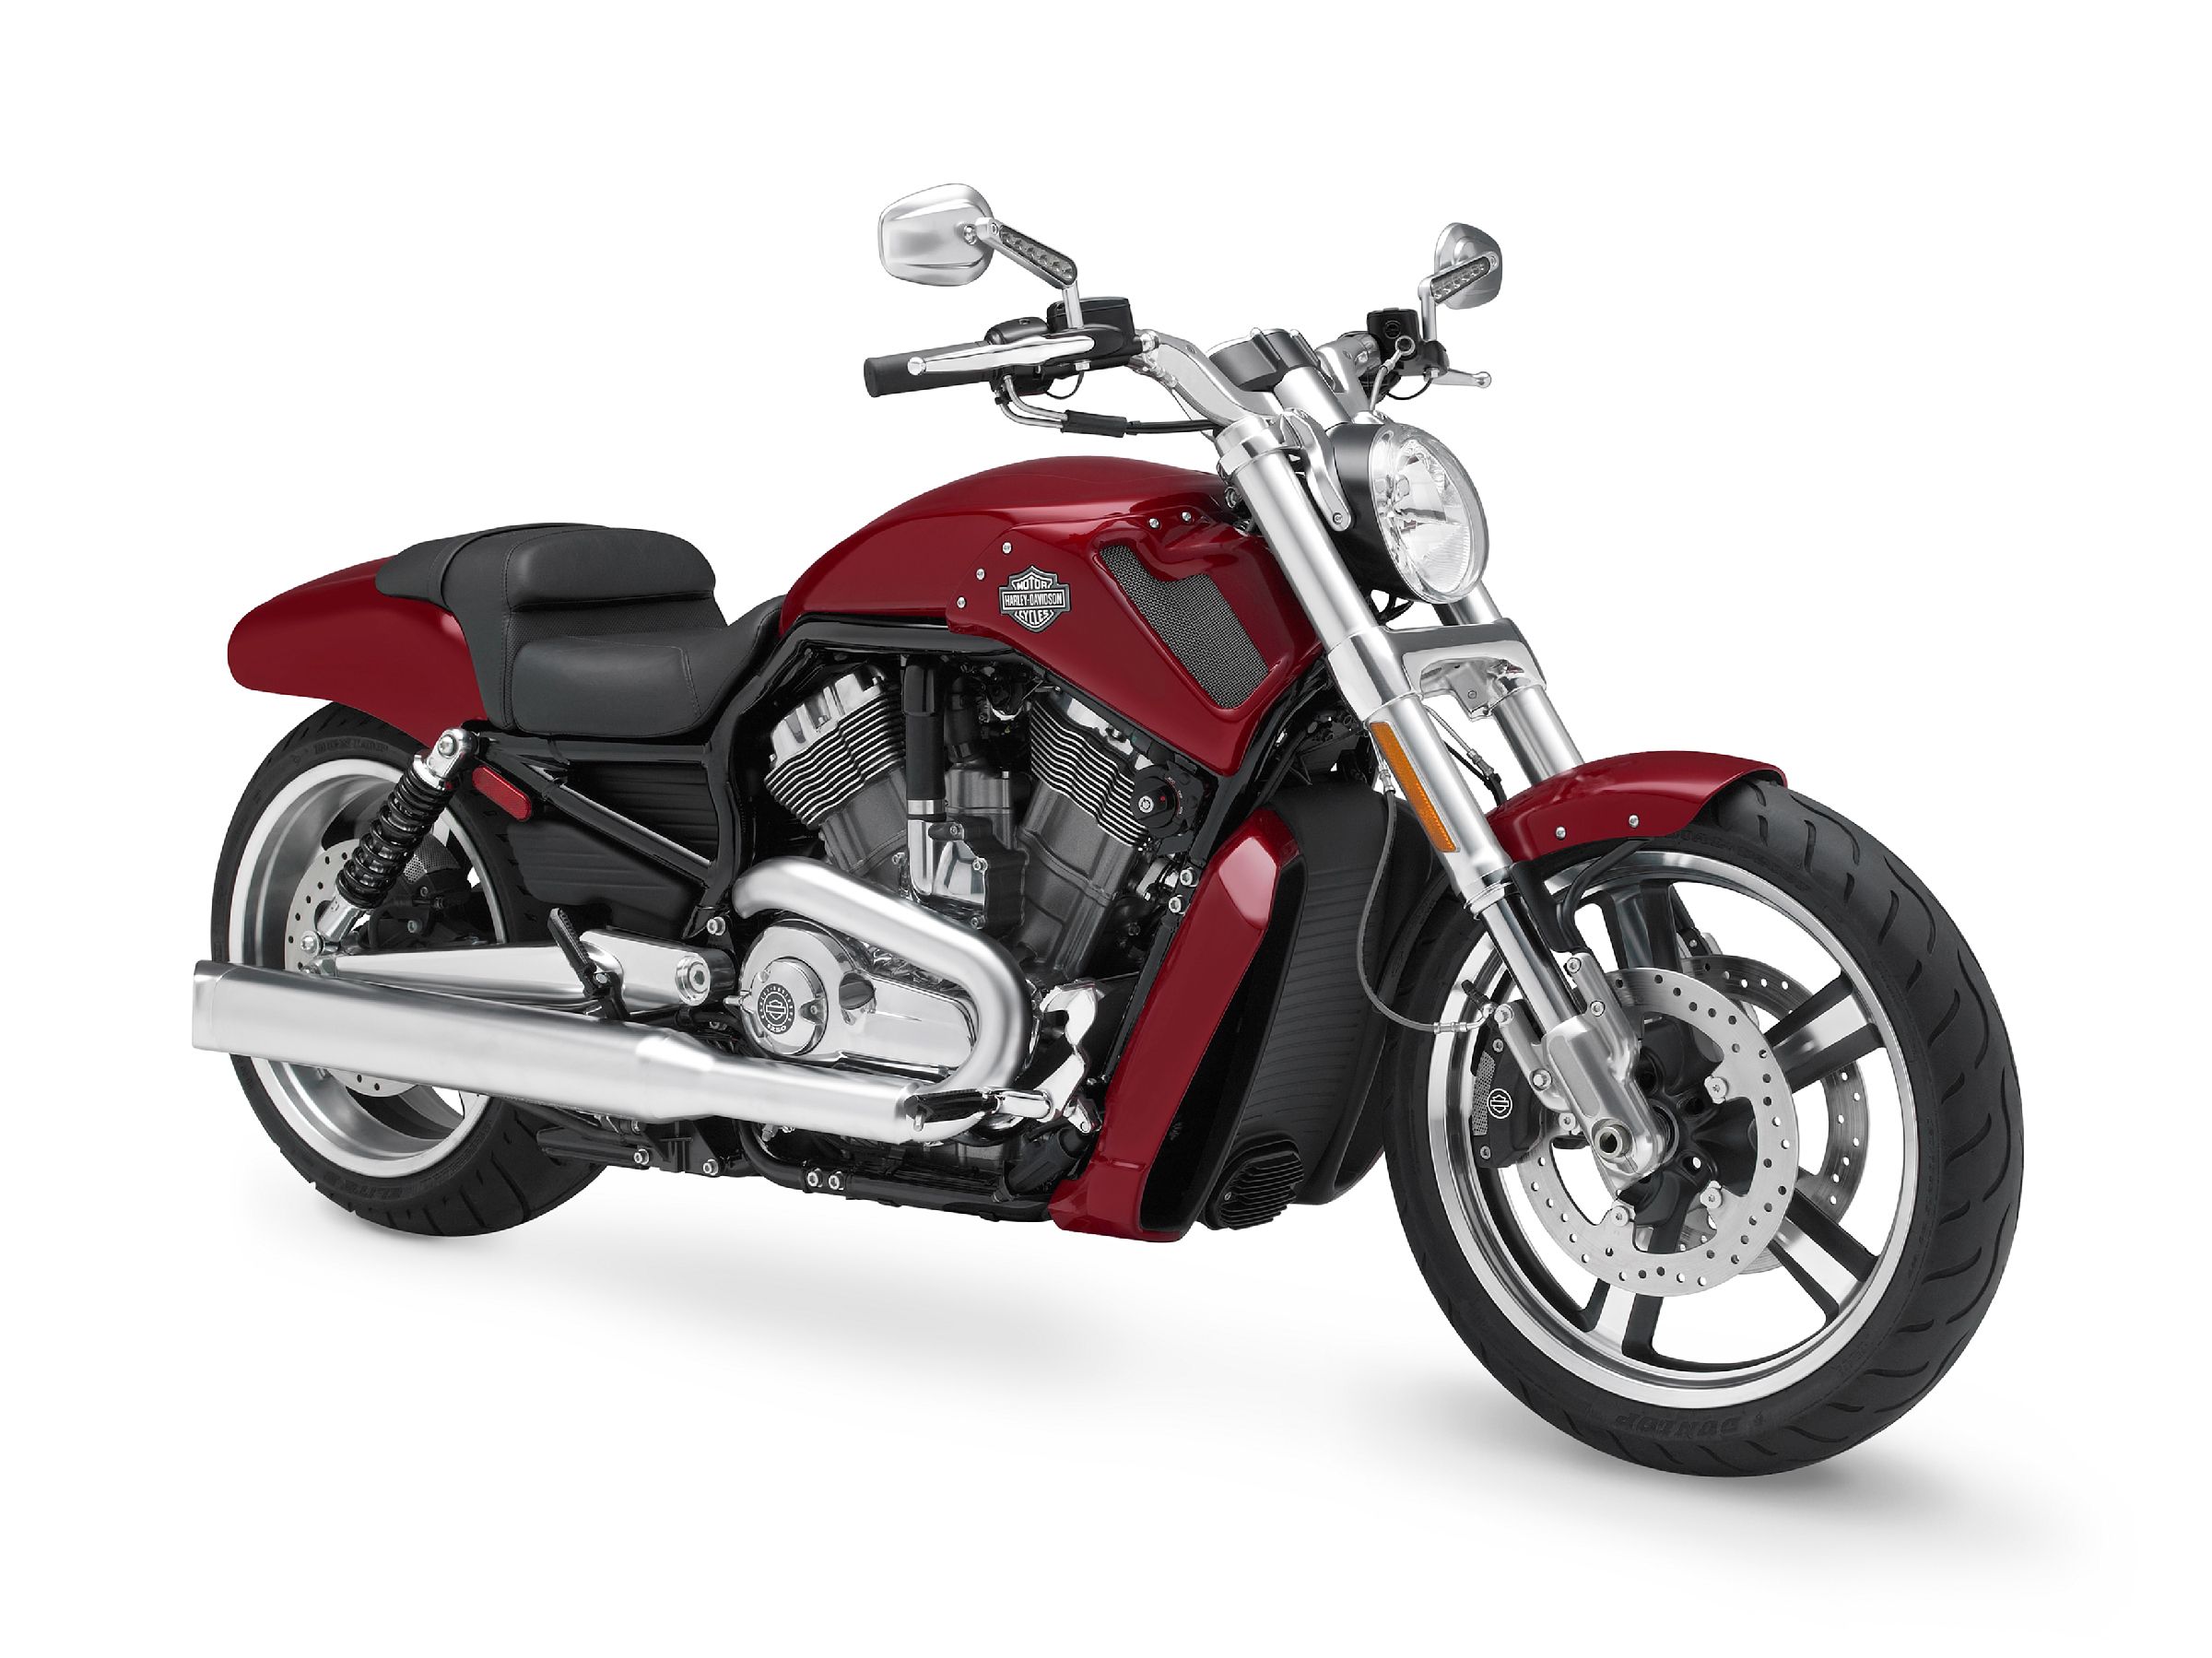  Harley-Davidson V-Rod Muscle